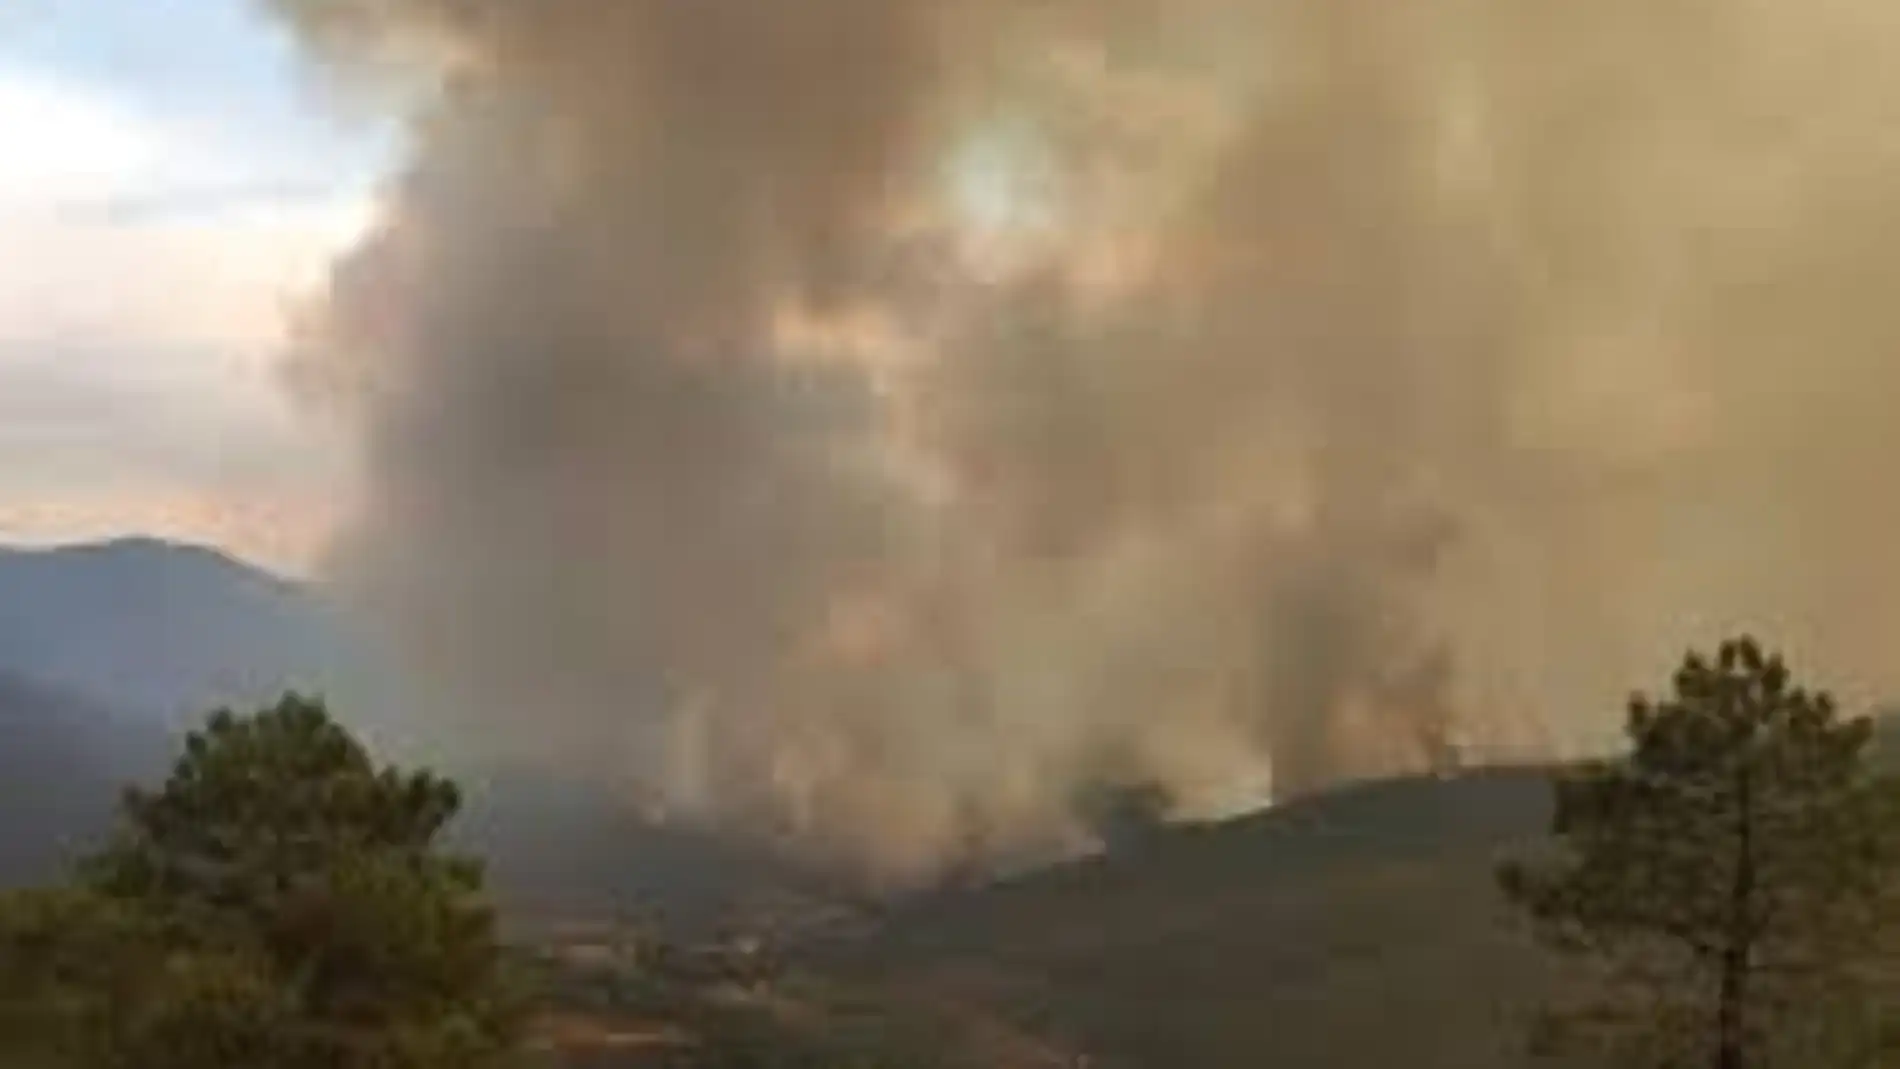 24 días después, el INFOEX da por controlado el incendio forestal de Hurdes-Gata que ha afectado a más de 10.000Ha 